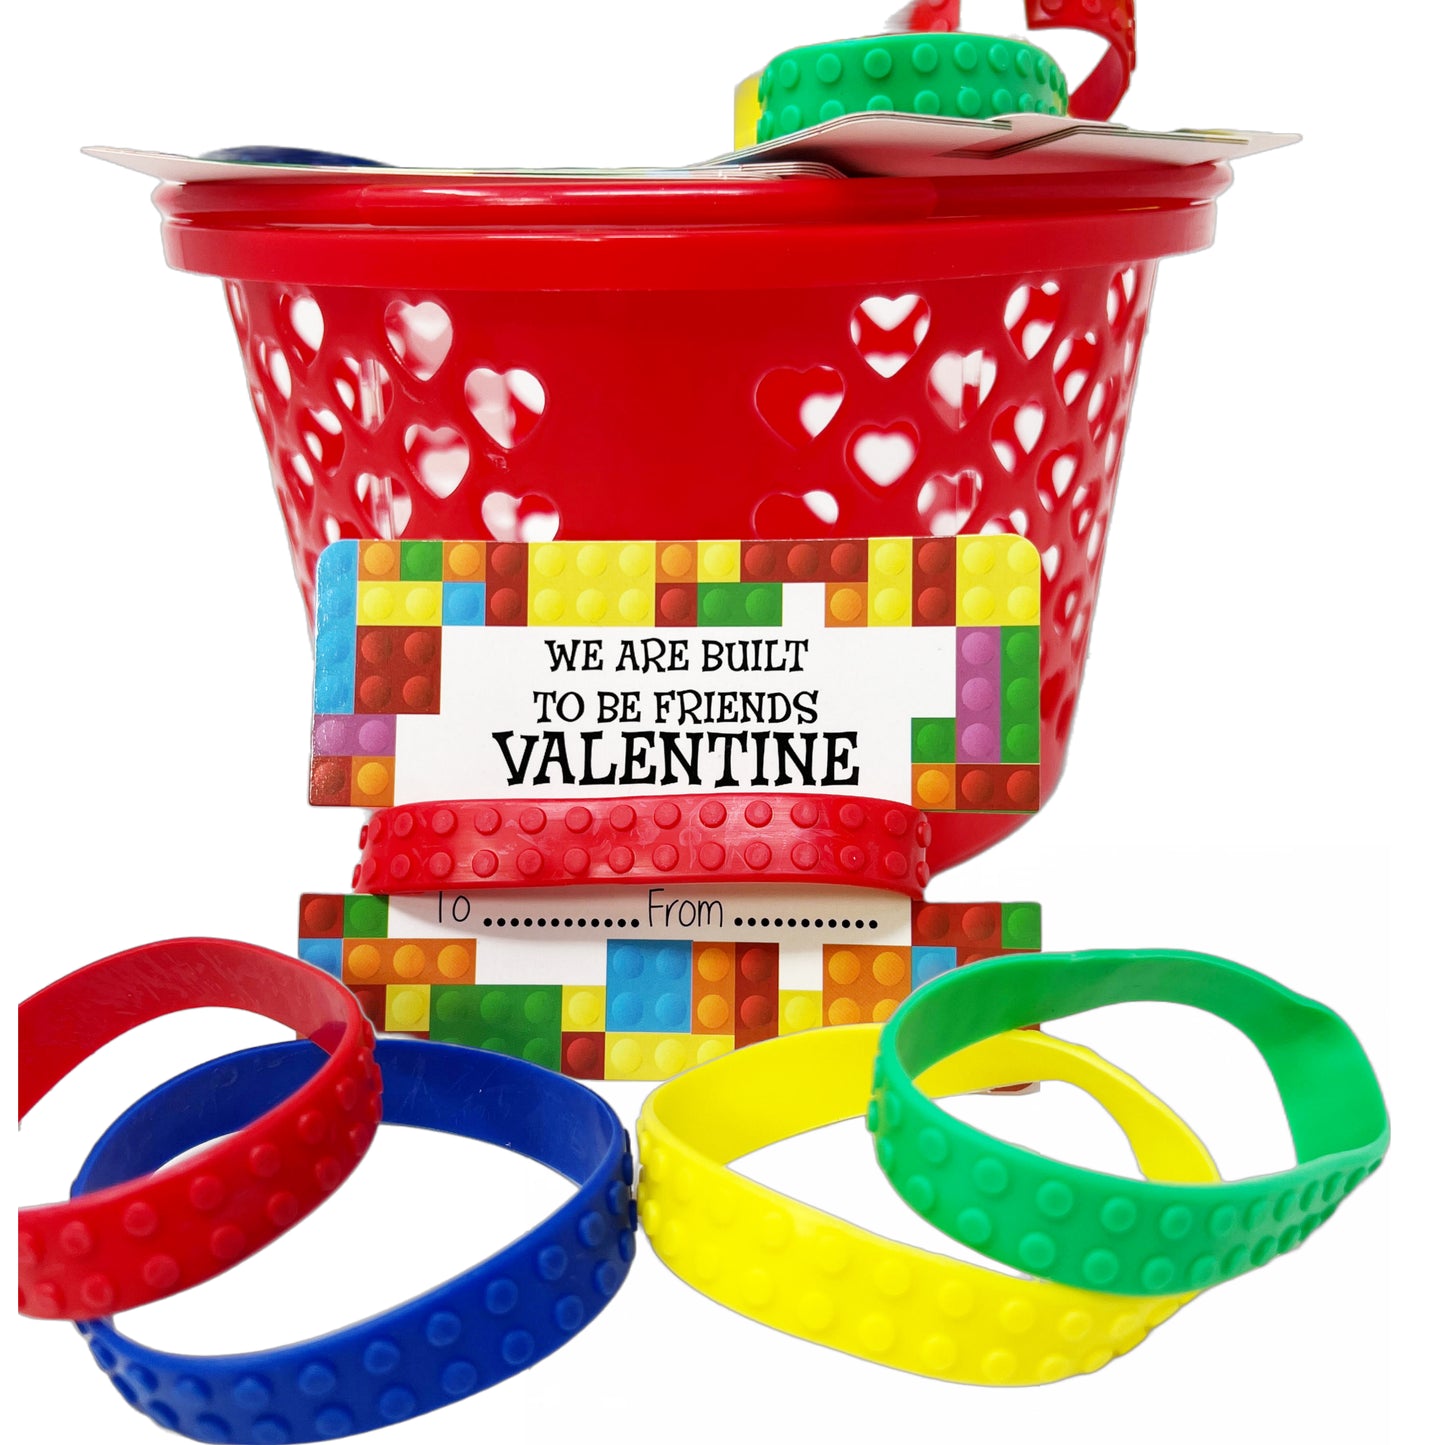 Cheep n Cheerful Valentine Kiddie Card Basket with 16ct Brick Bracelets and Valentine Cards, Deluxe Valentine Novelty, Kids Valentine, 33 pcs